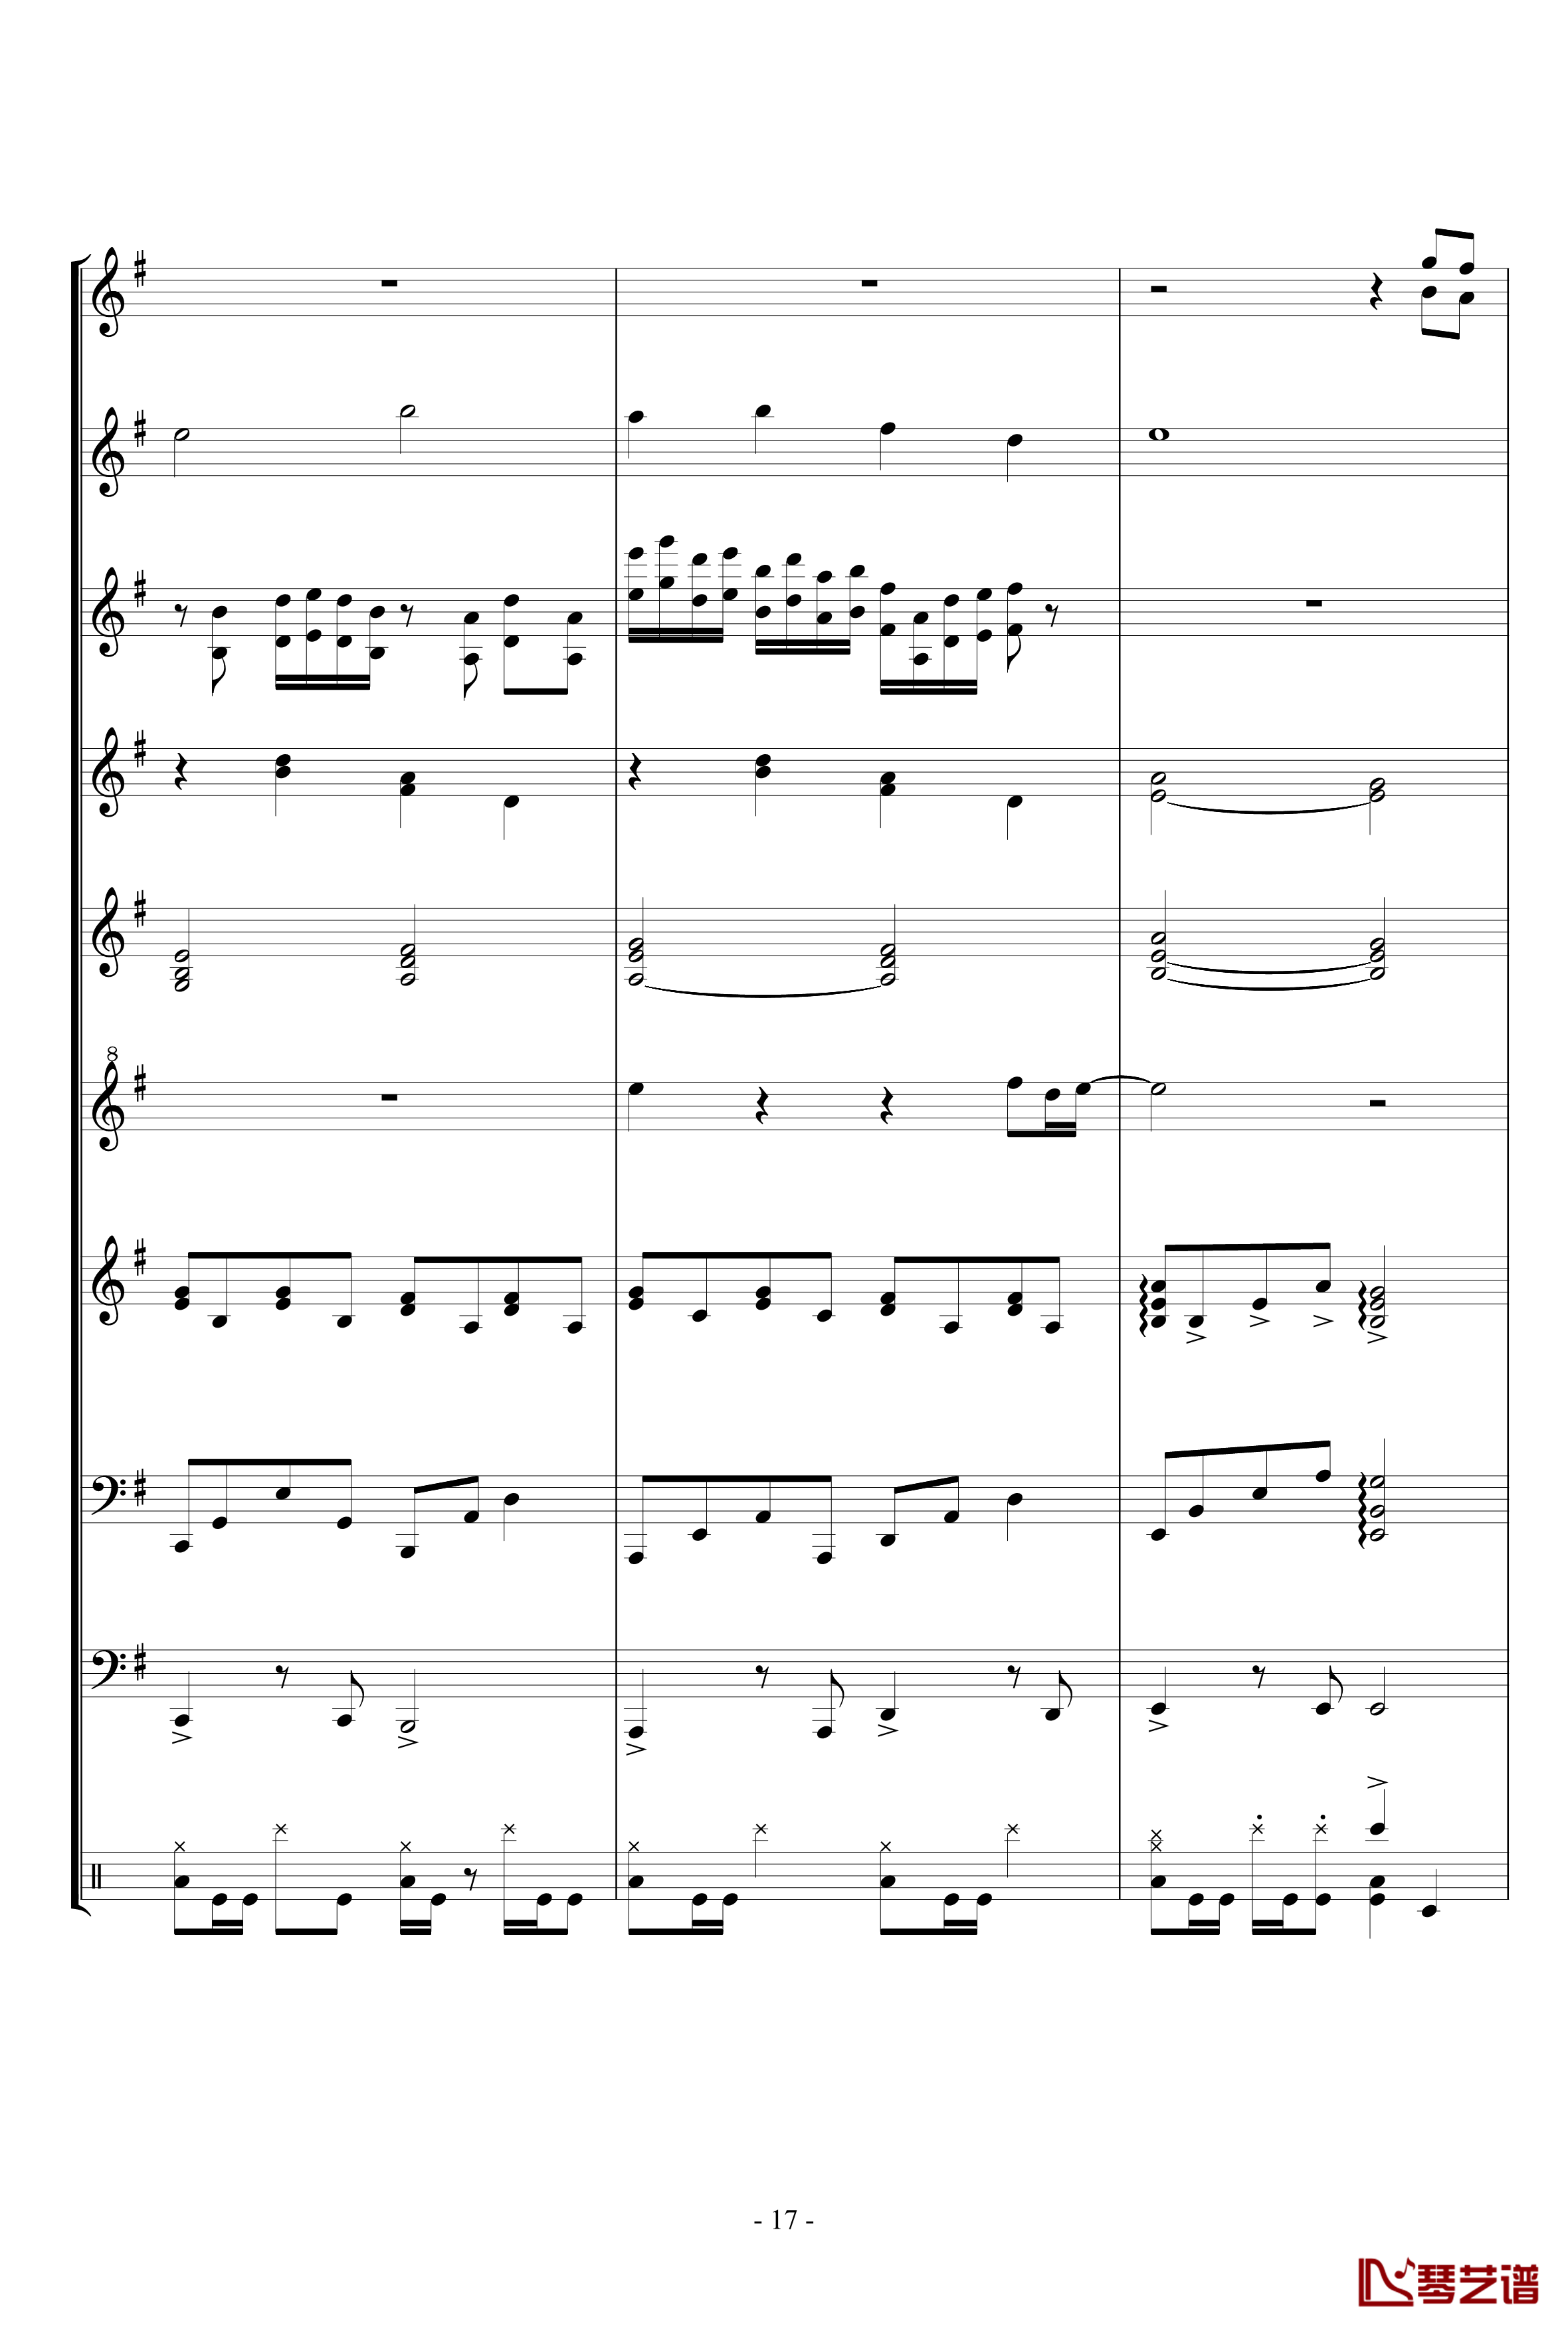 キミガタメ 钢琴谱-总谱-Suara17